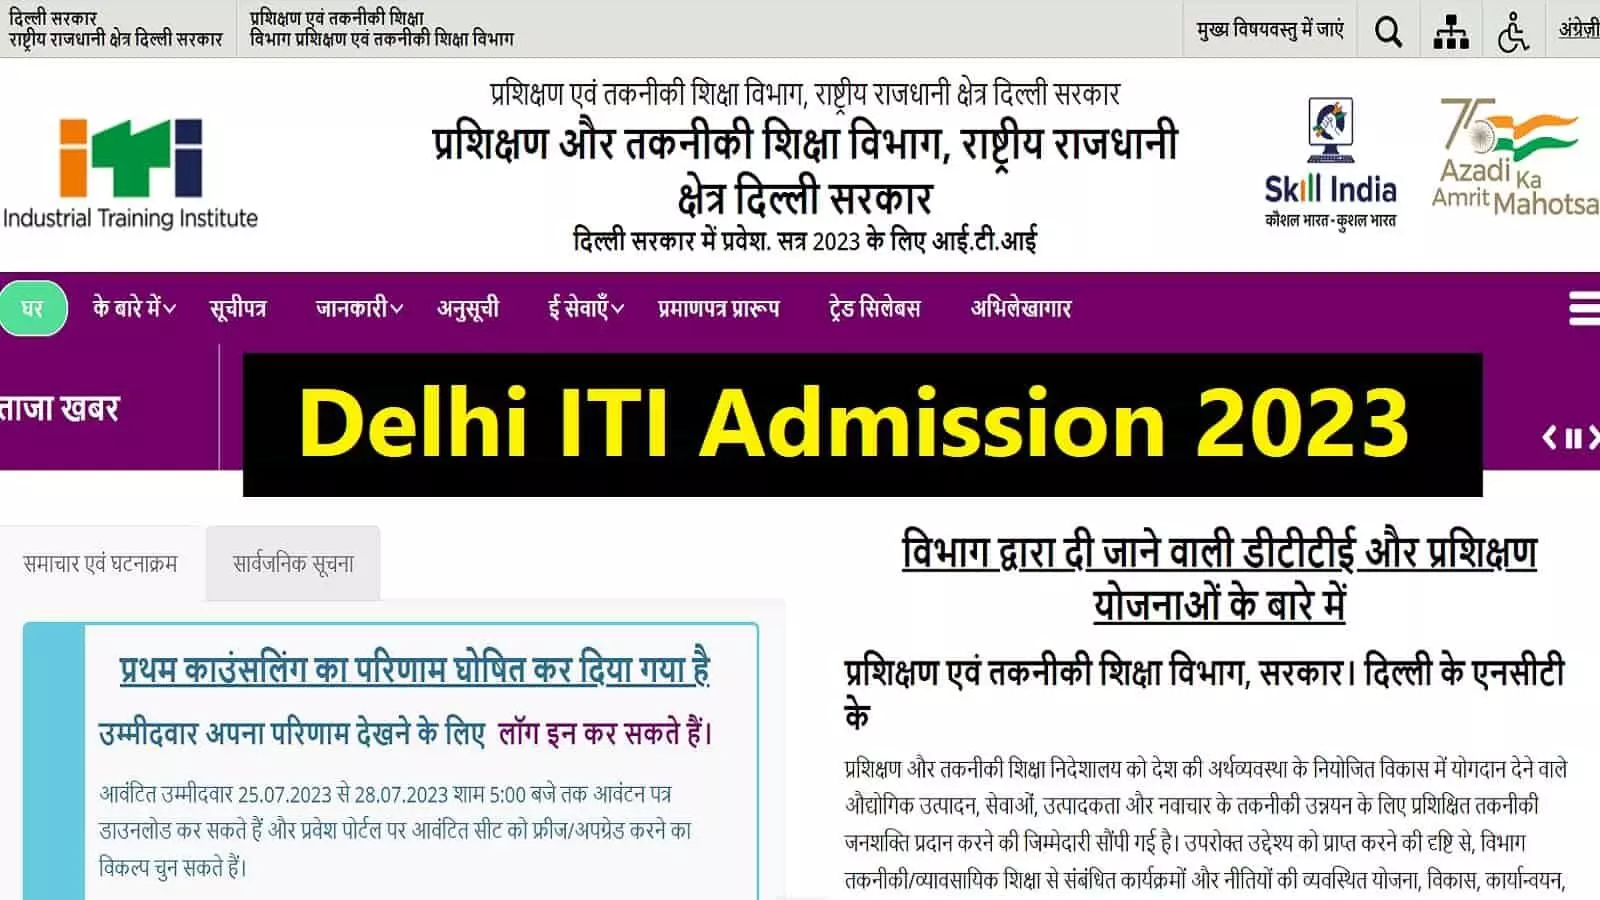 Delhi ITI Admission 2023: फर्स्ट काउंसलिंग रिजल्ट जारी, फटाफट जानें महत्वपूर्ण जानकारियां